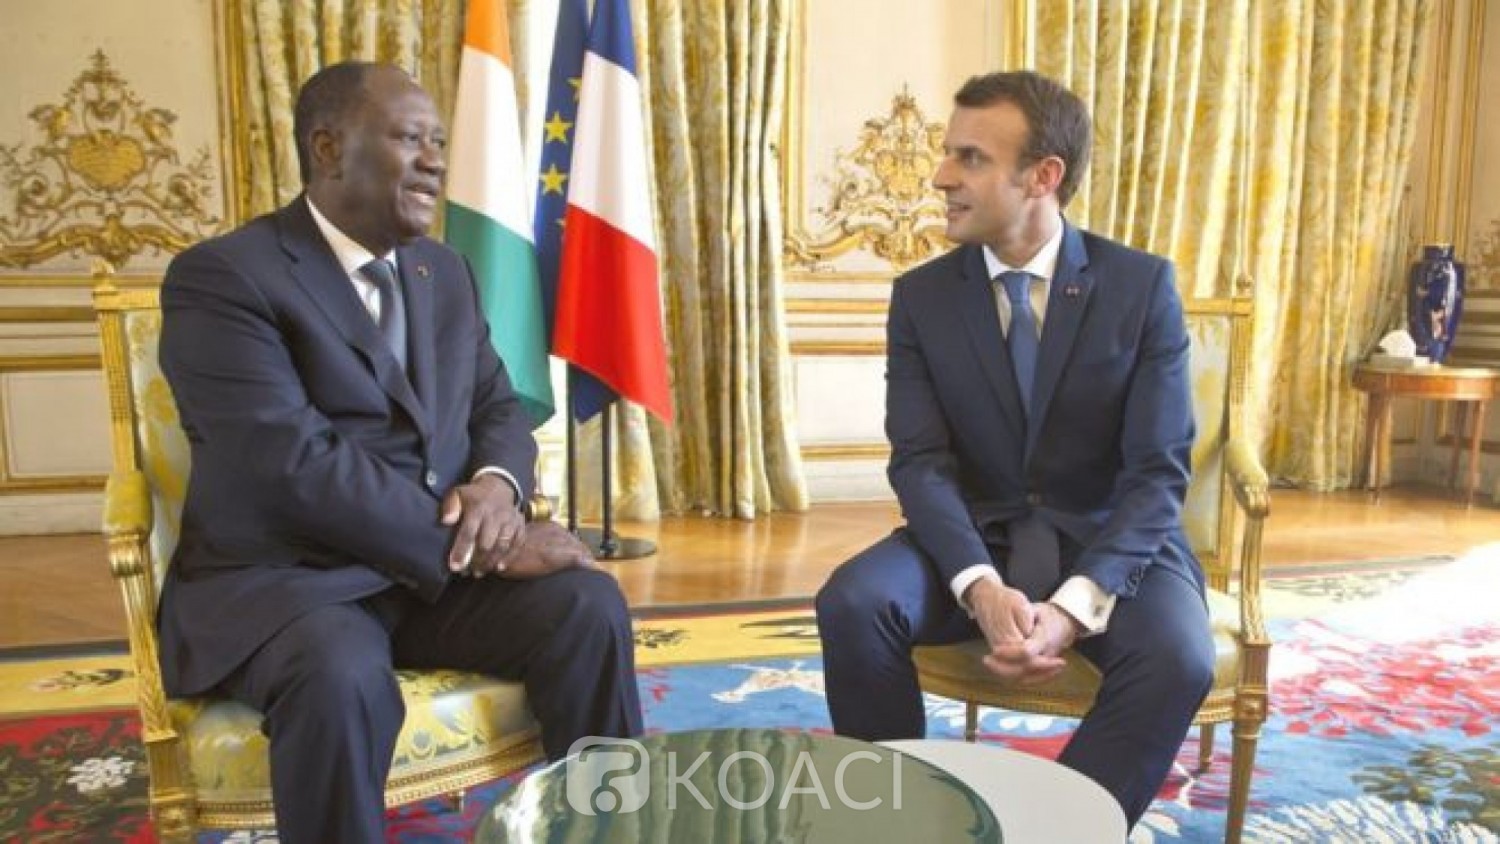 Côte d'Ivoire-France: Emmanuel Macron reporte de quelques jours sa venue à Abidjan